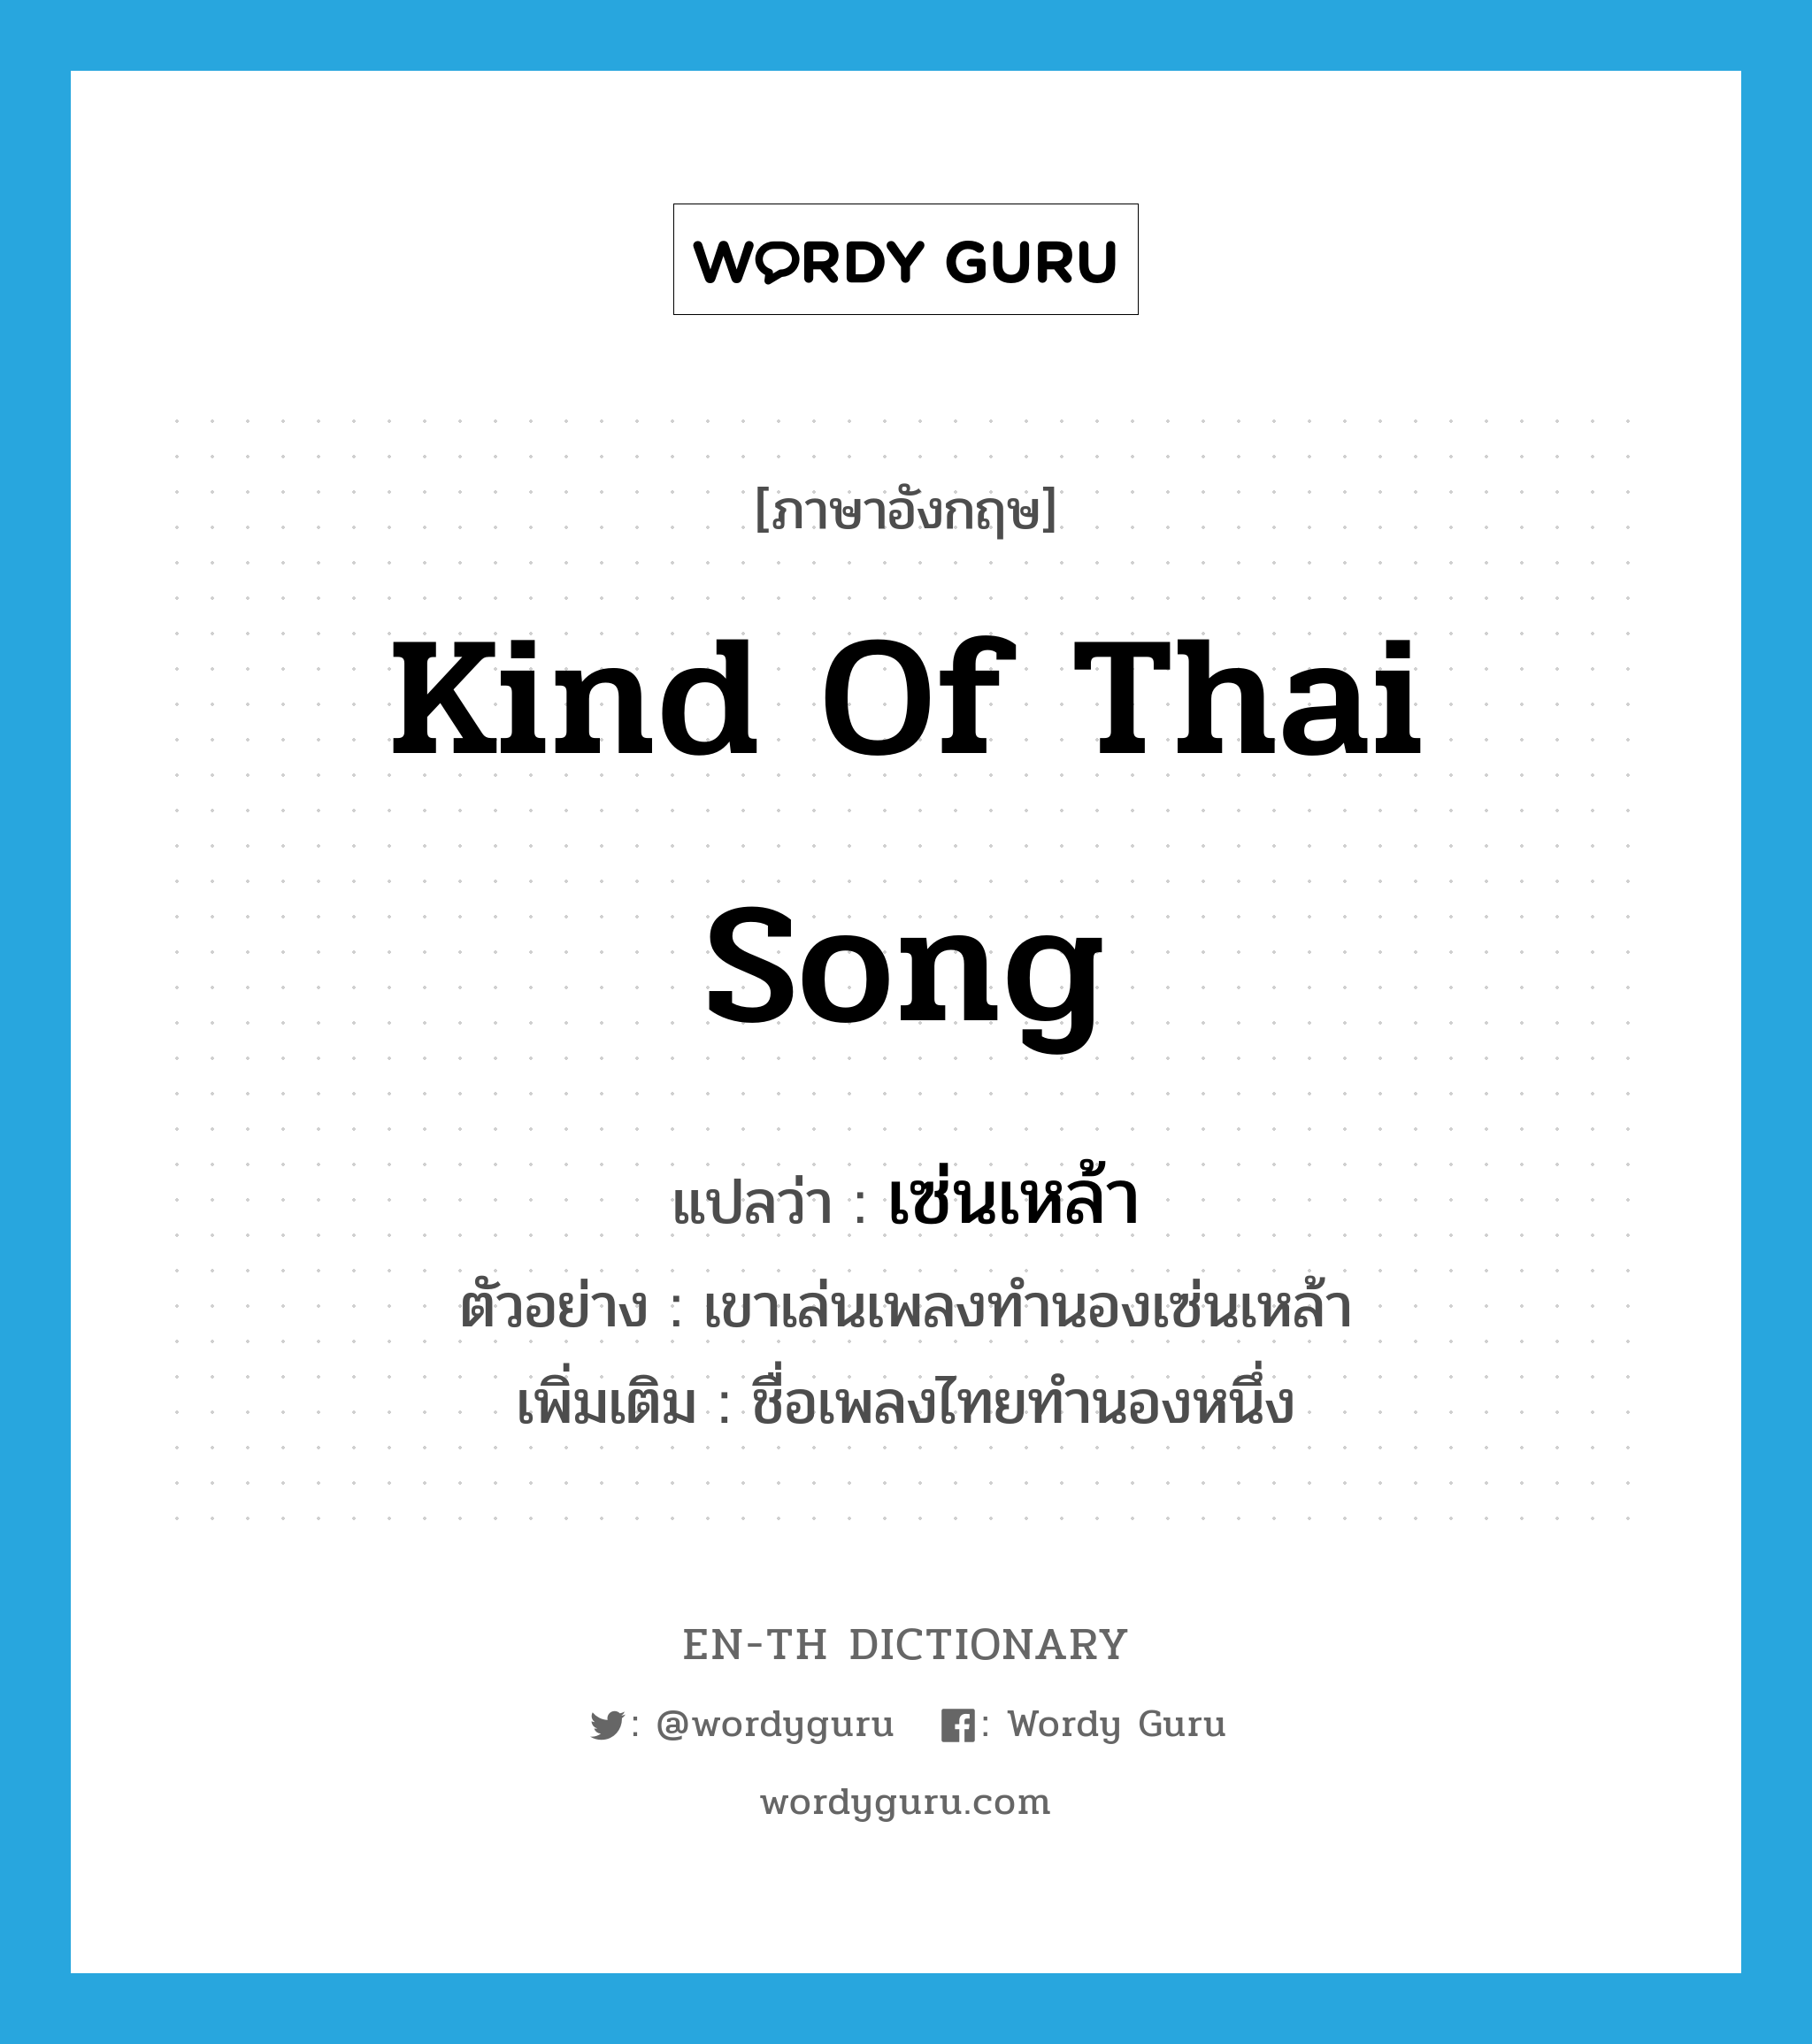 kind of Thai song แปลว่า?, คำศัพท์ภาษาอังกฤษ kind of Thai song แปลว่า เซ่นเหล้า ประเภท N ตัวอย่าง เขาเล่นเพลงทำนองเซ่นเหล้า เพิ่มเติม ชื่อเพลงไทยทำนองหนึ่ง หมวด N